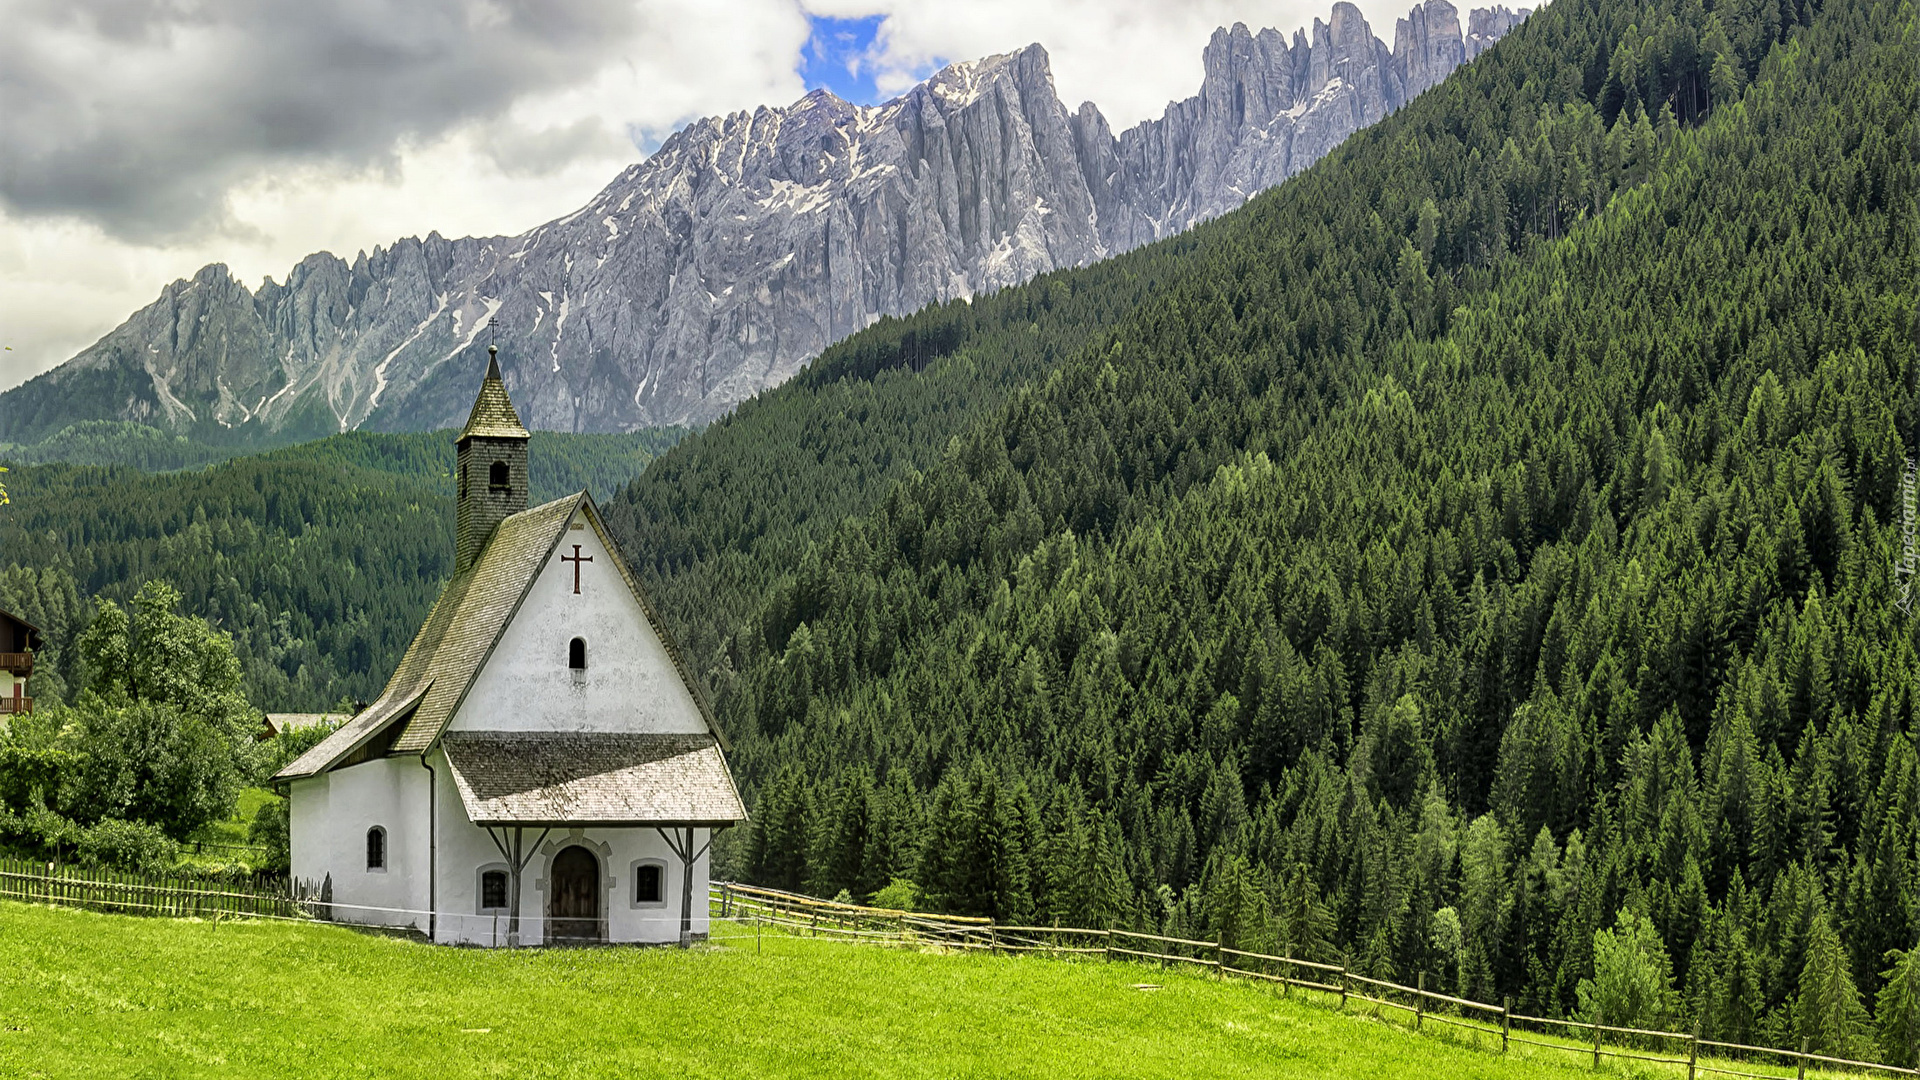 Kaplica San Sebastiano, Cappella di San Sebastiano, Miejscowość Welschnofen, Nova Levante, Włochy, Góry Alpy, Drzewa, Lasy, Wzgórza